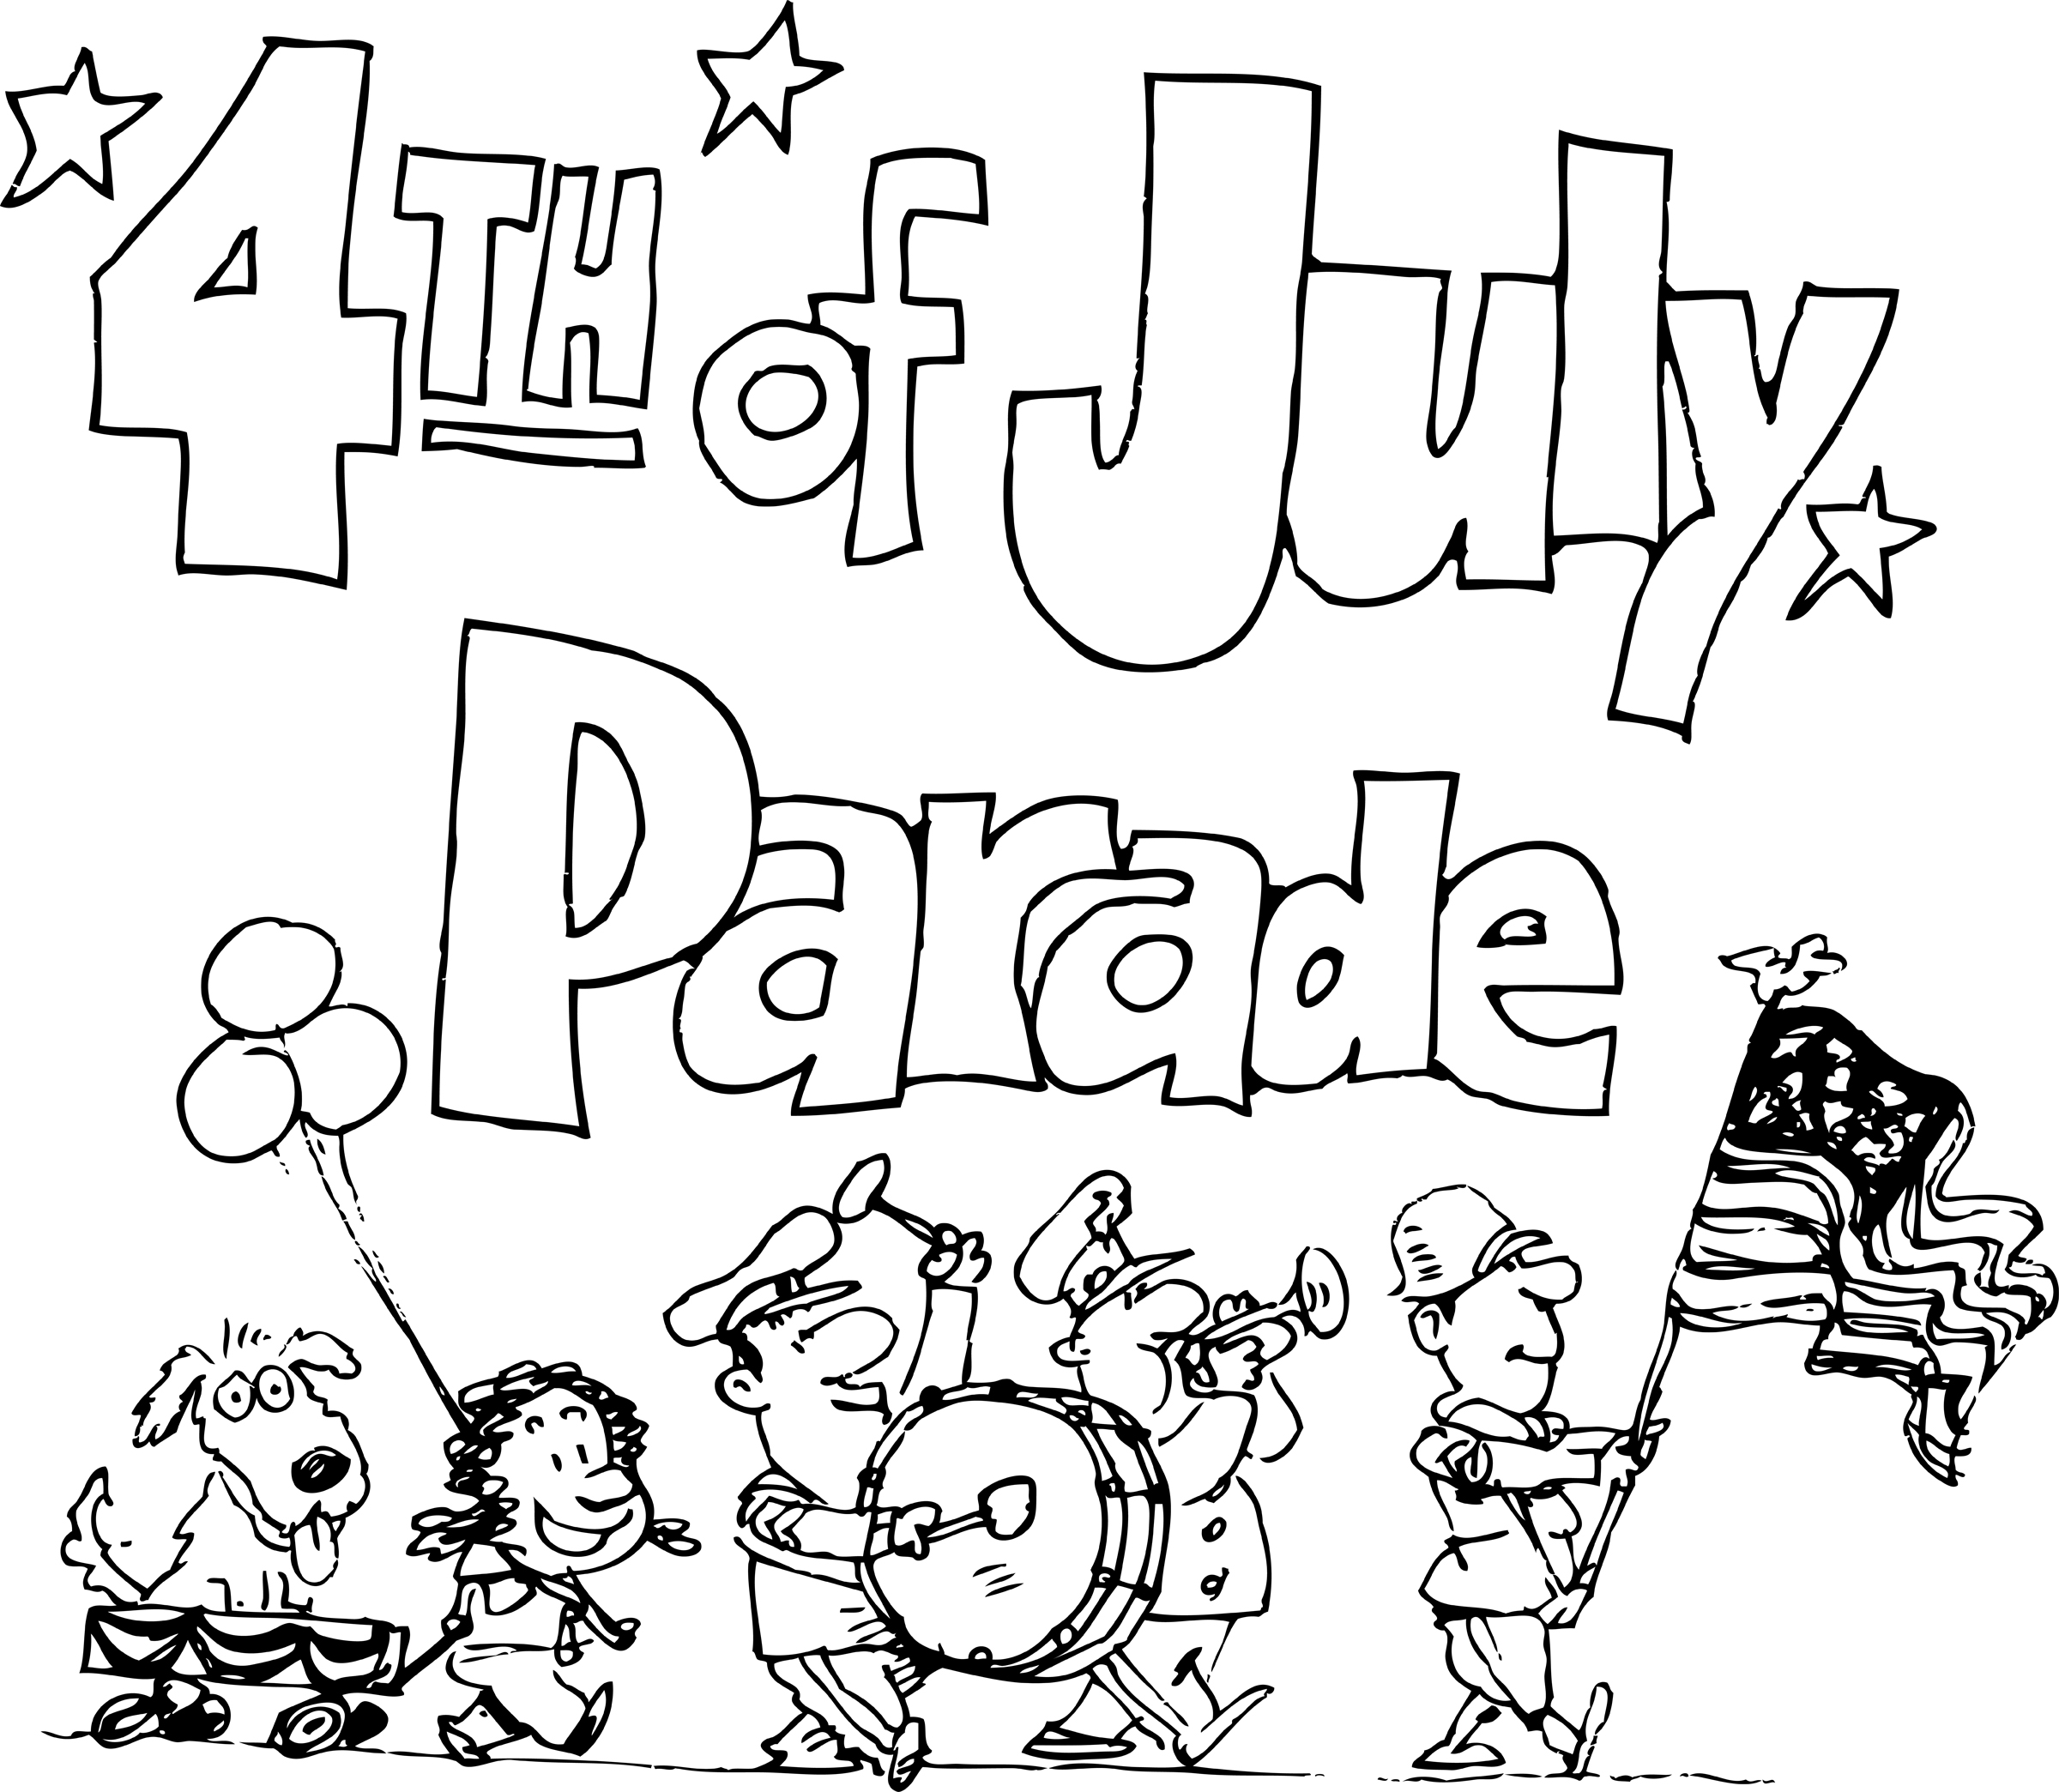 July 4th Parades